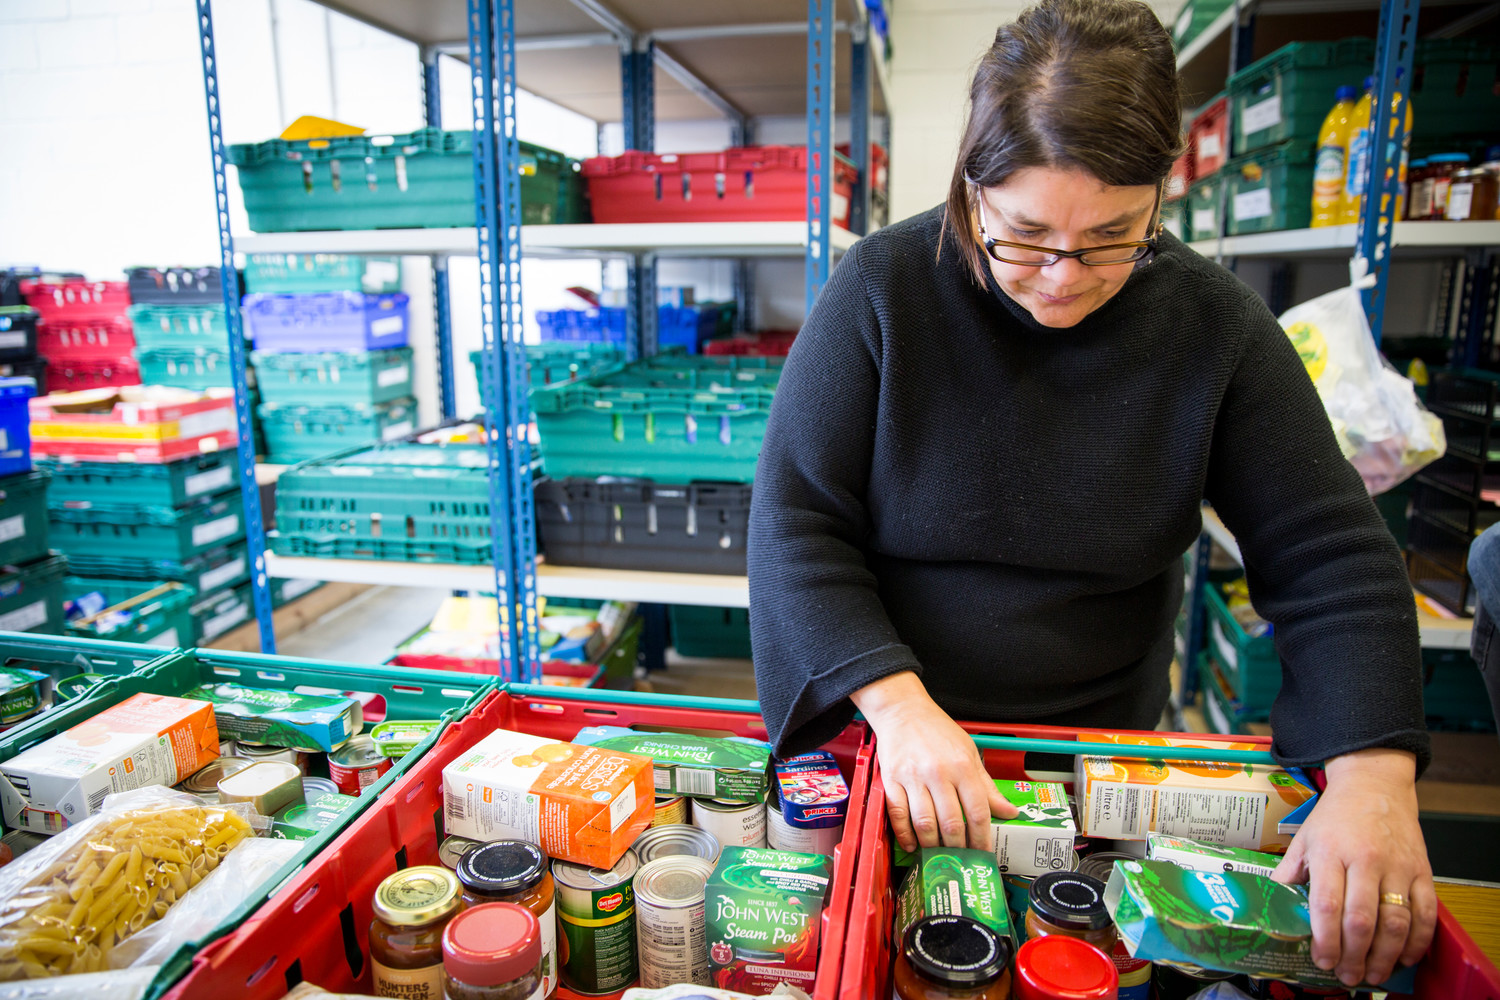 Asda and Burngreave Foodbank’s volunteer heroes help people get food